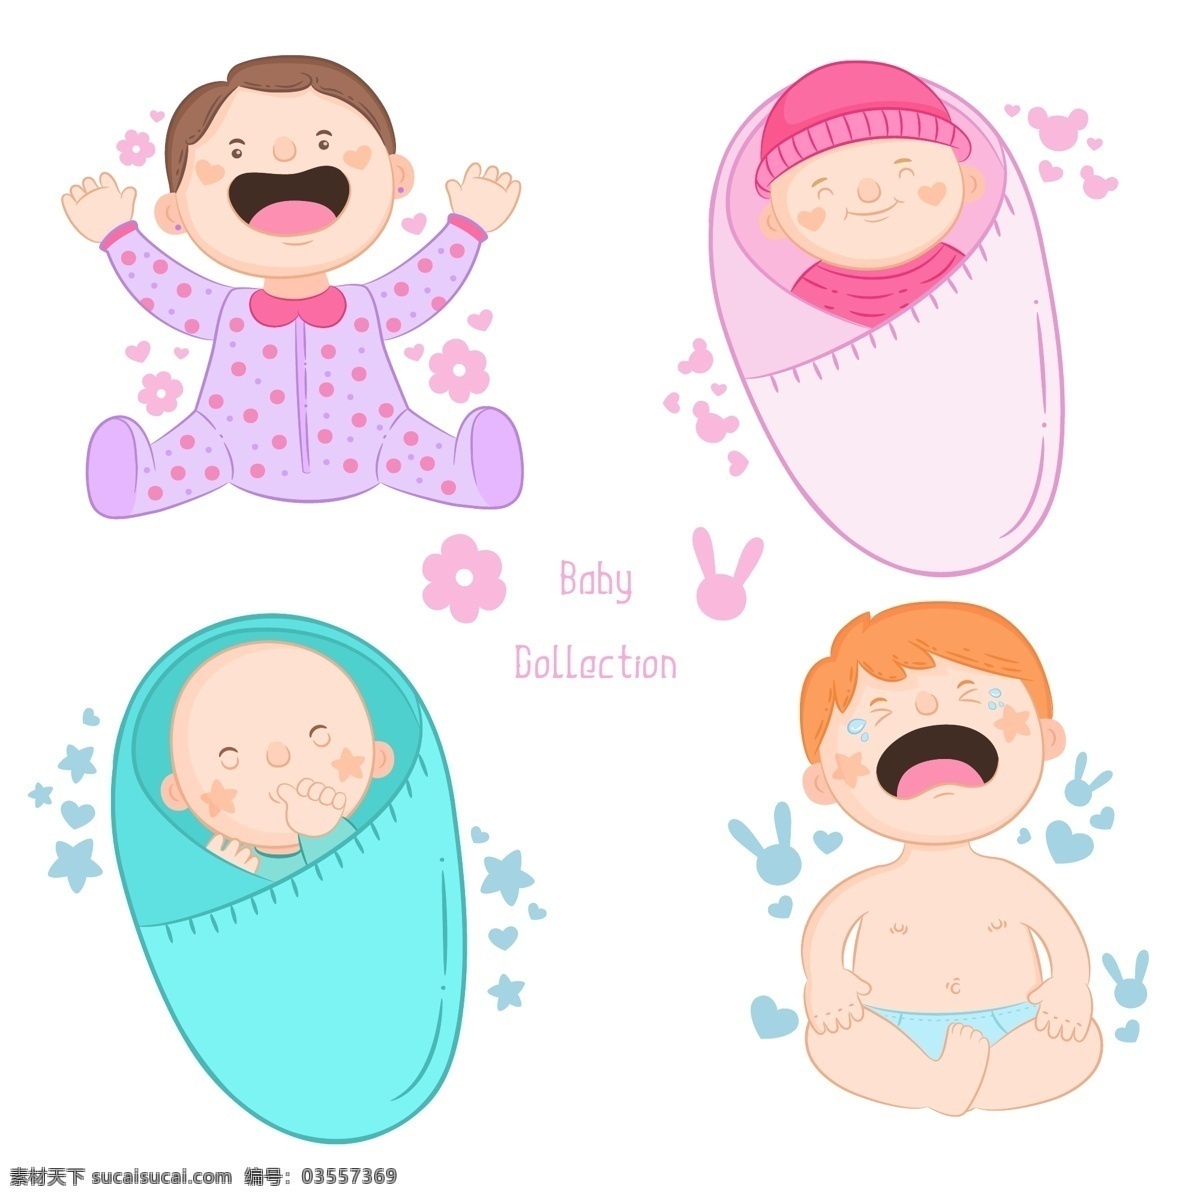 婴儿 新生儿 宝宝 幼儿 母婴 满月 手绘 卡通 可爱 小宝贝 小可爱 小宝宝